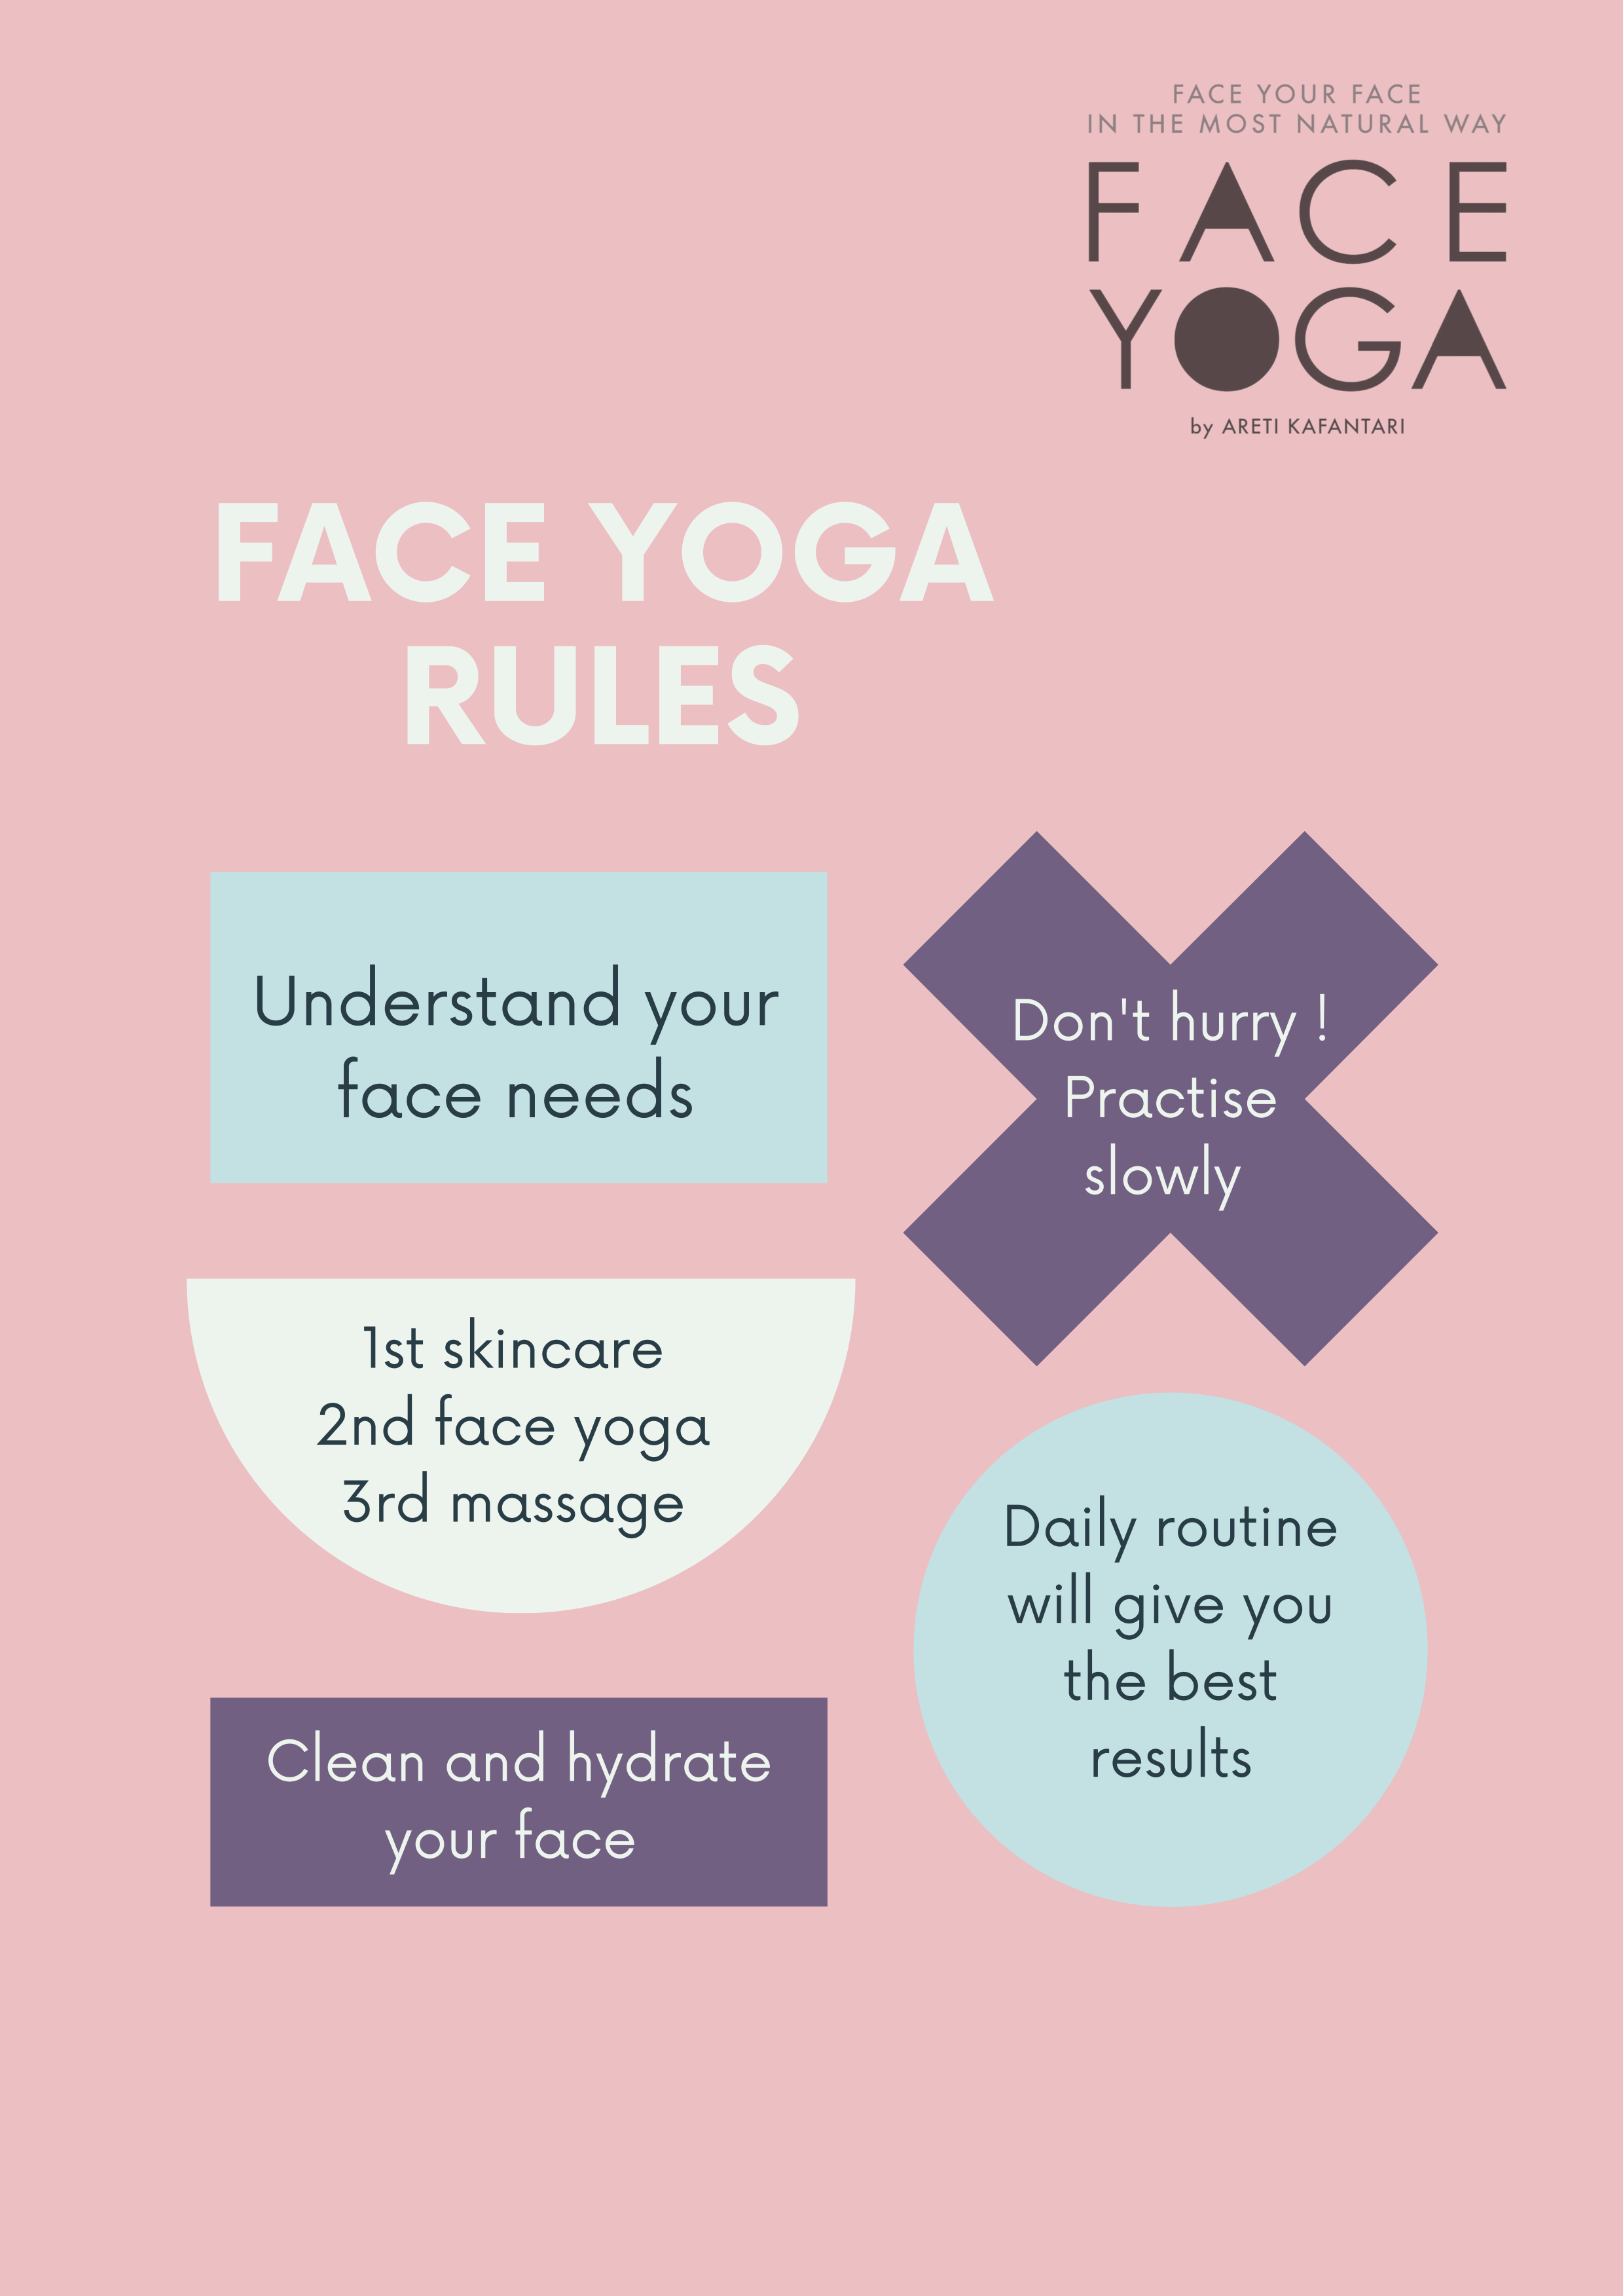 Κανόνες Face Yoga